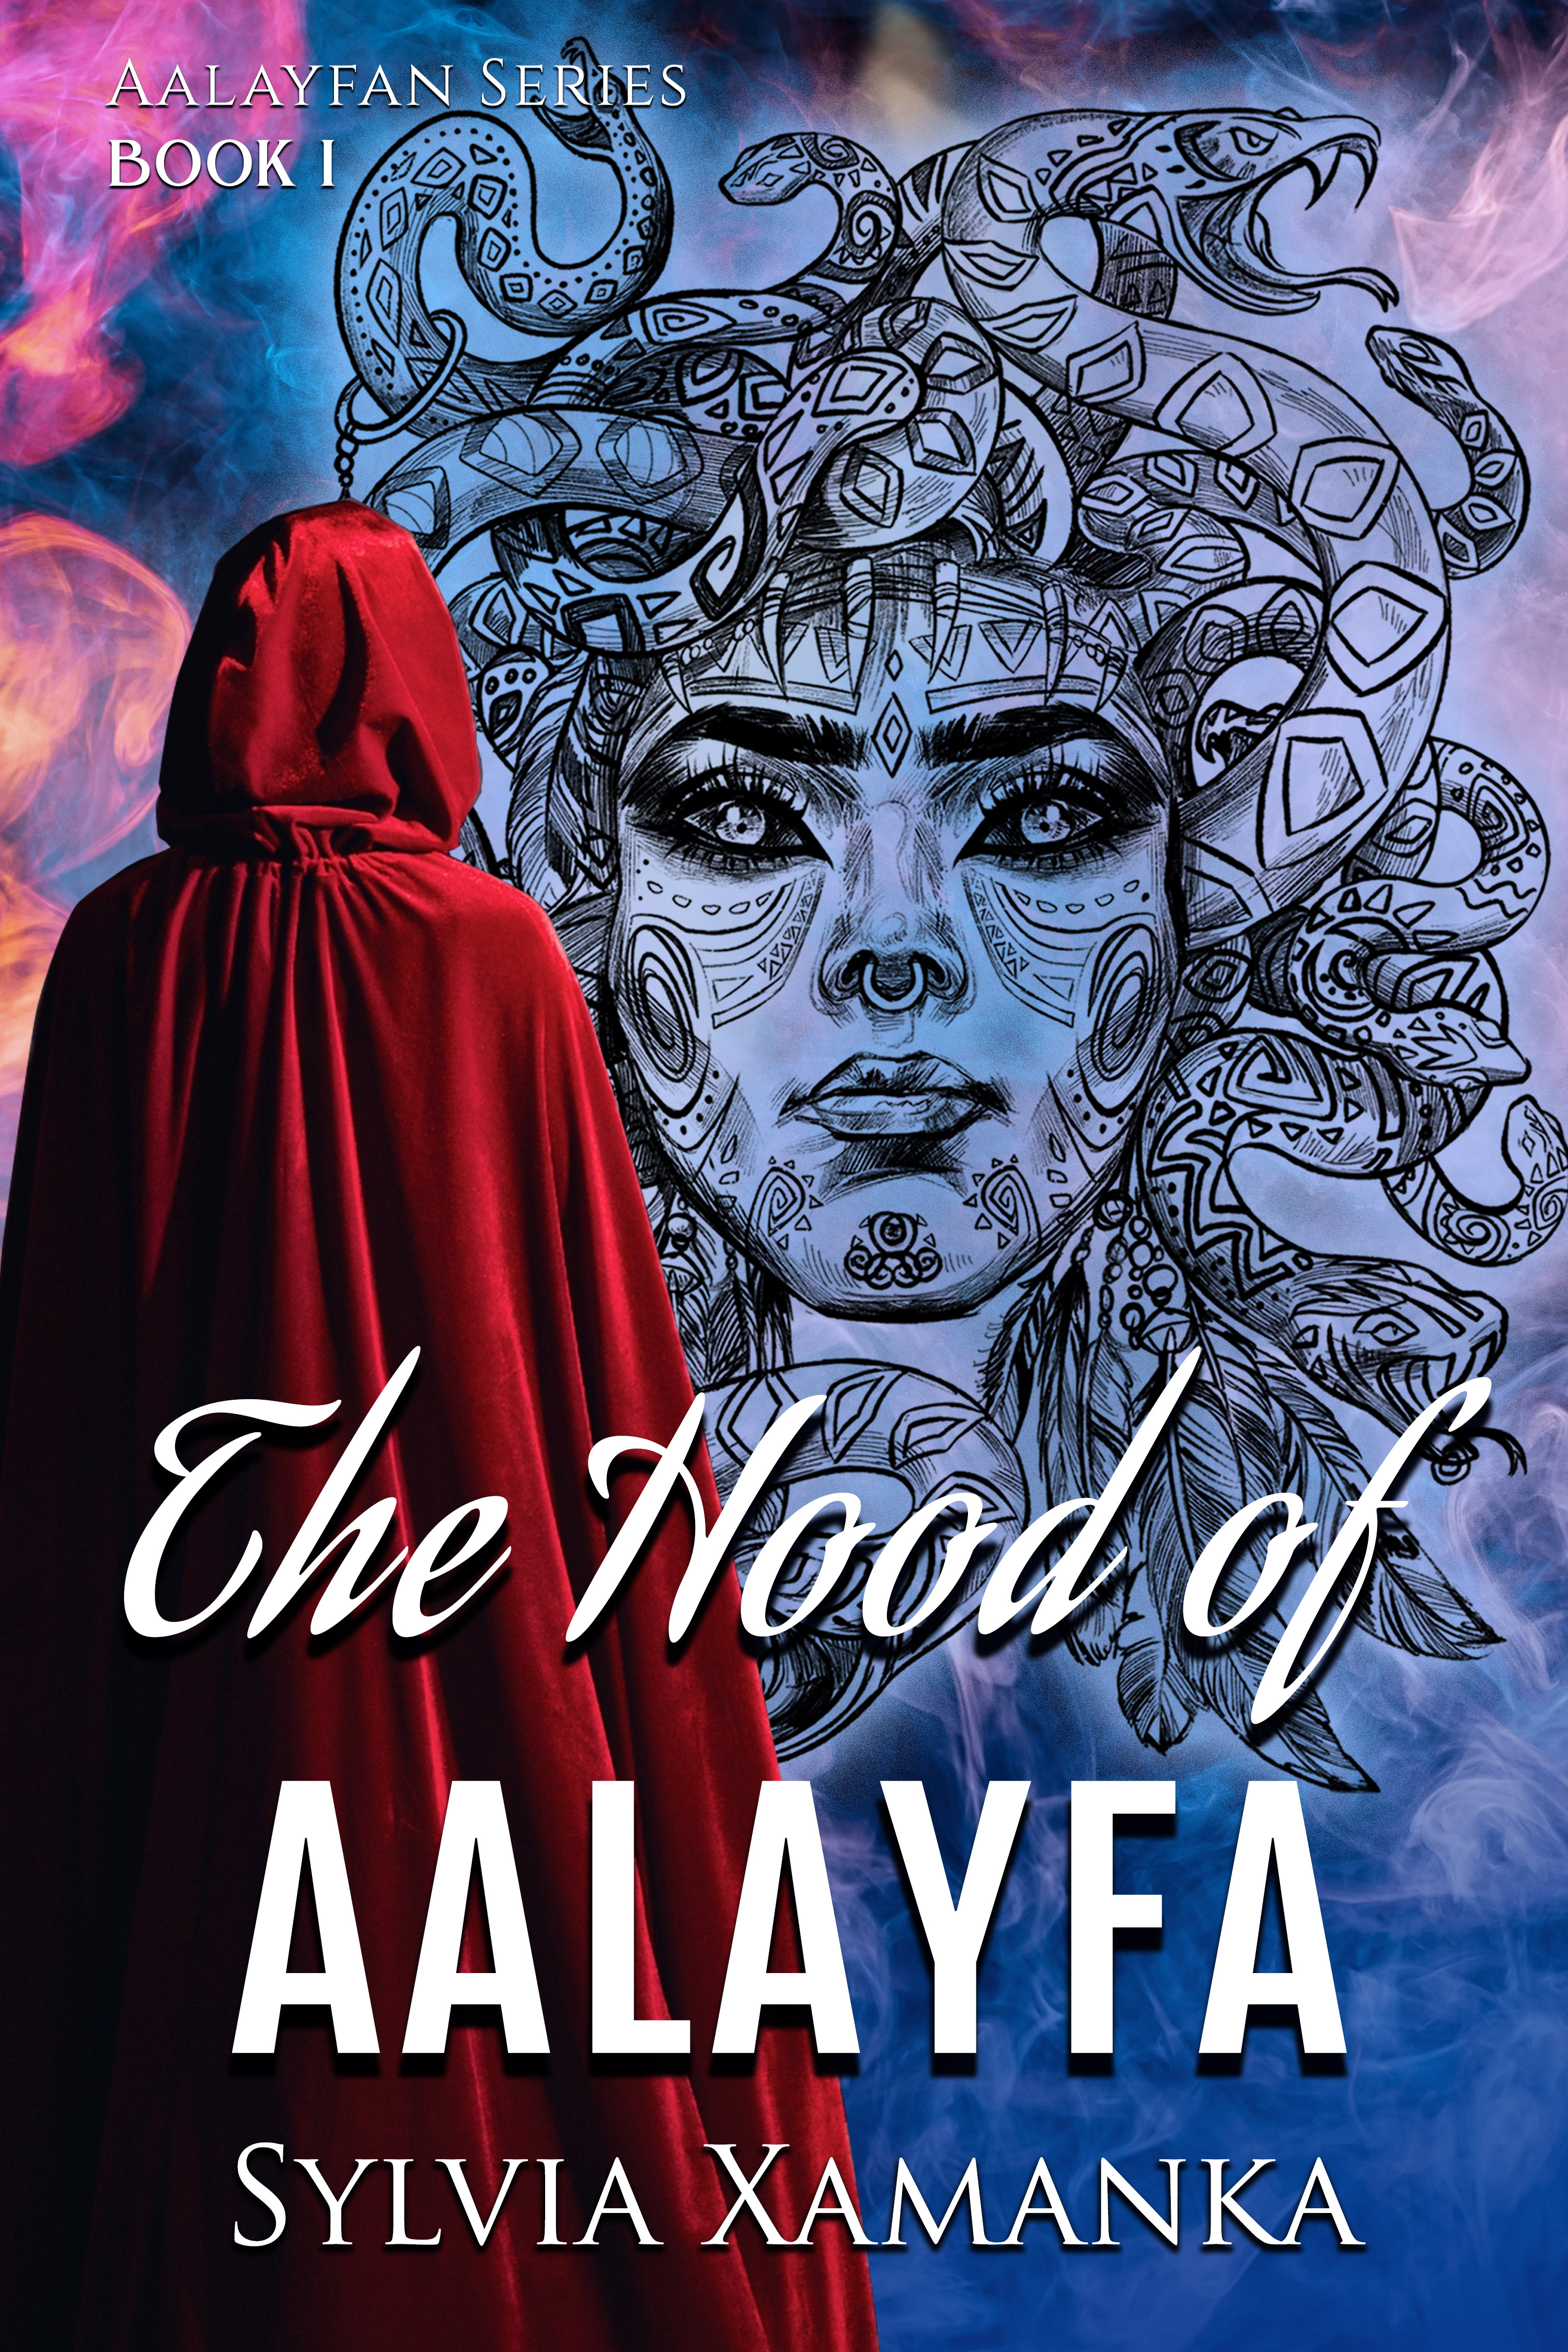 The Hood of Aalayfa by Sylvia Xamanka